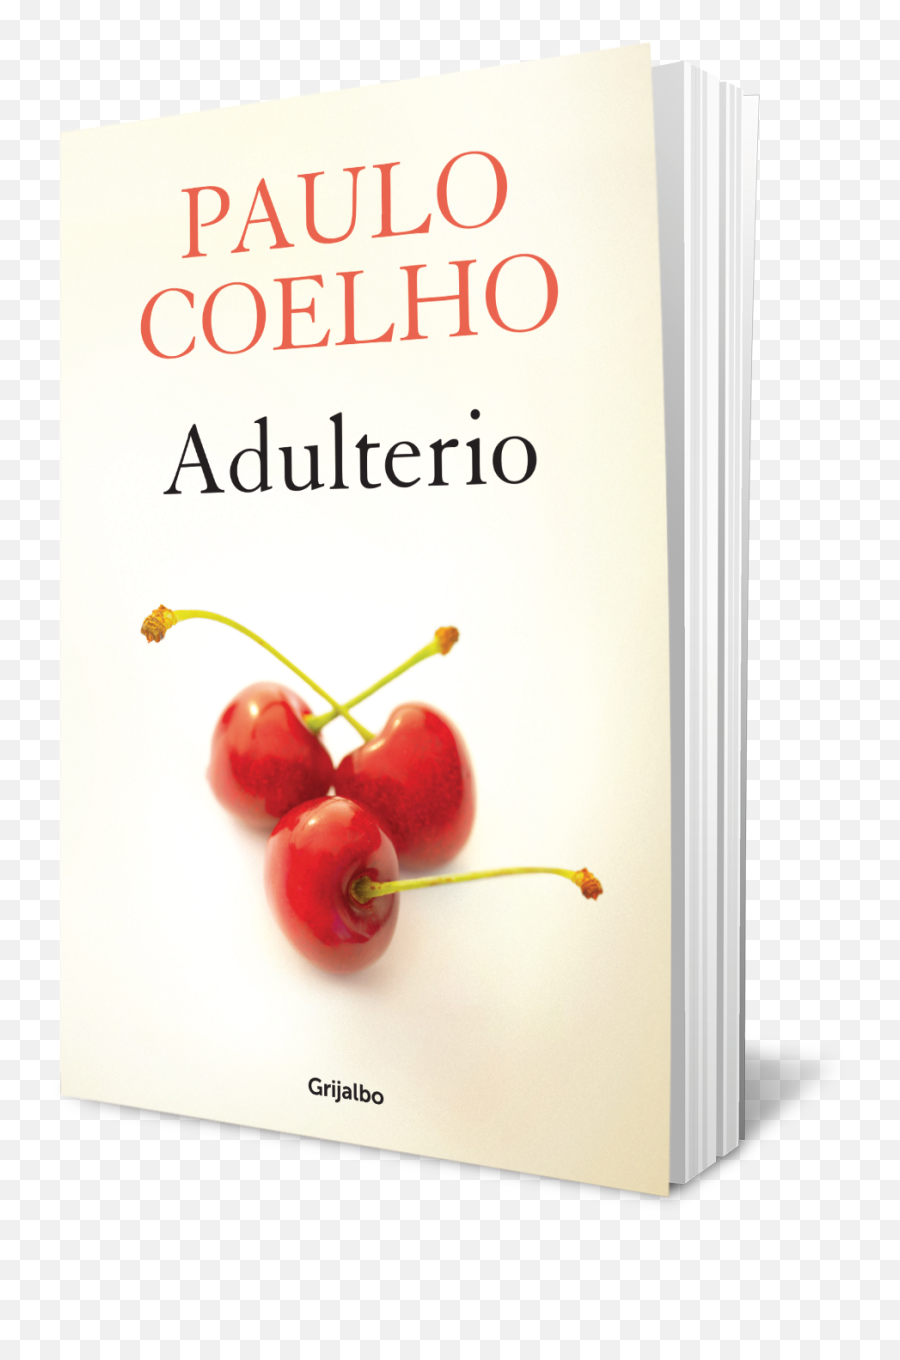 Paulo Coelho - Libro Paulo Coelho Adulterio Emoji,Paulo Coelho Universe Emotions